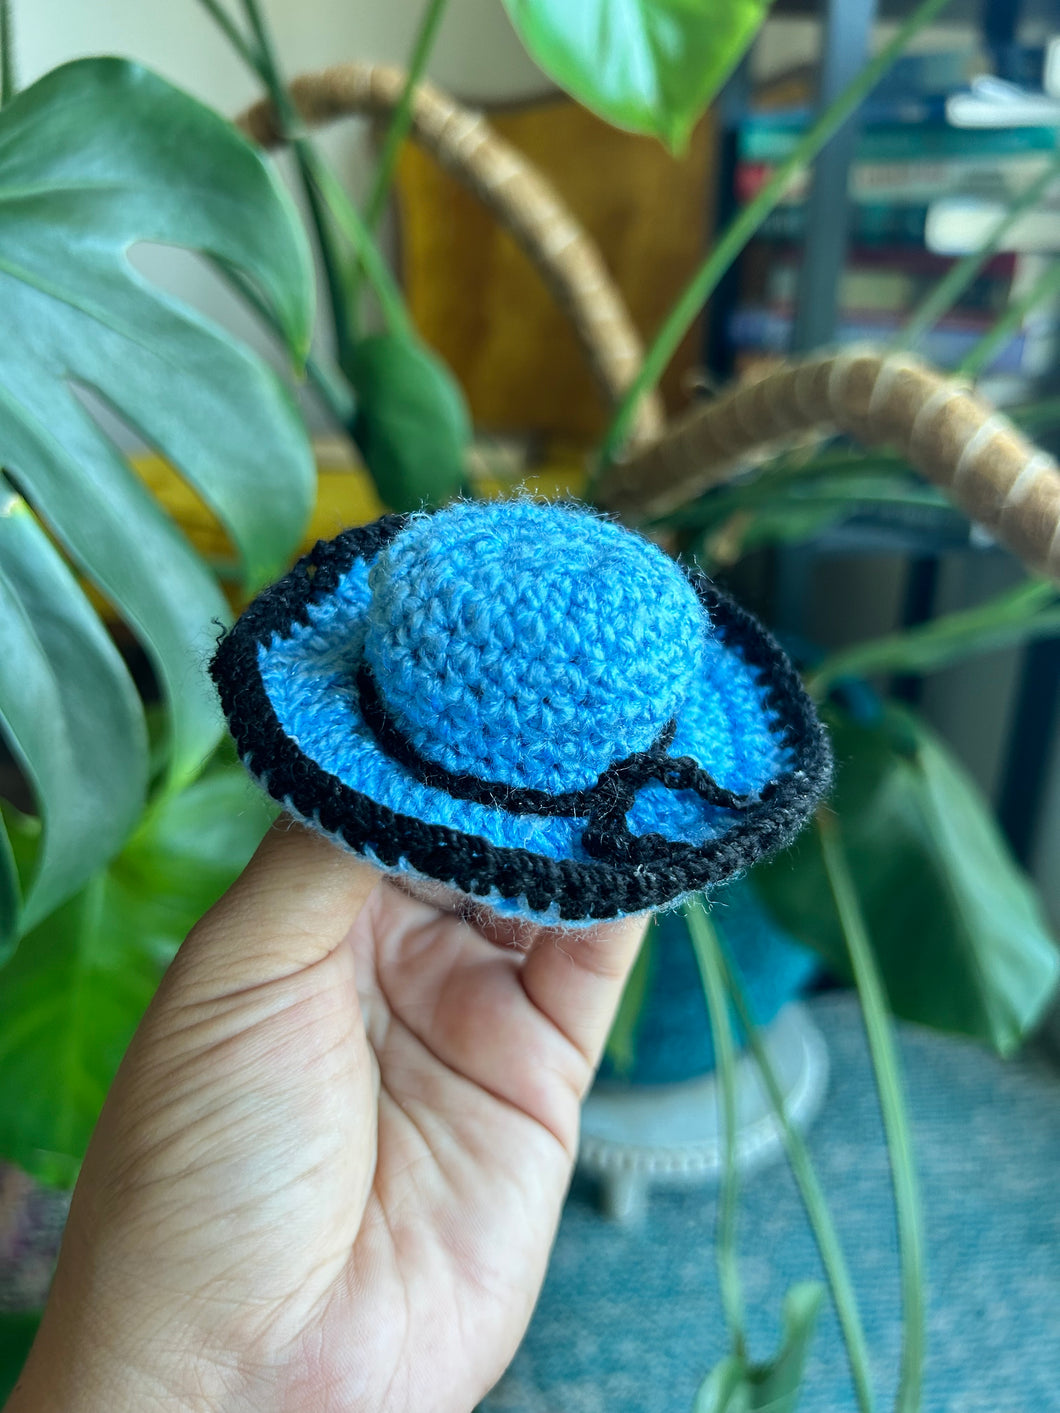 Sombrerito - black and blue